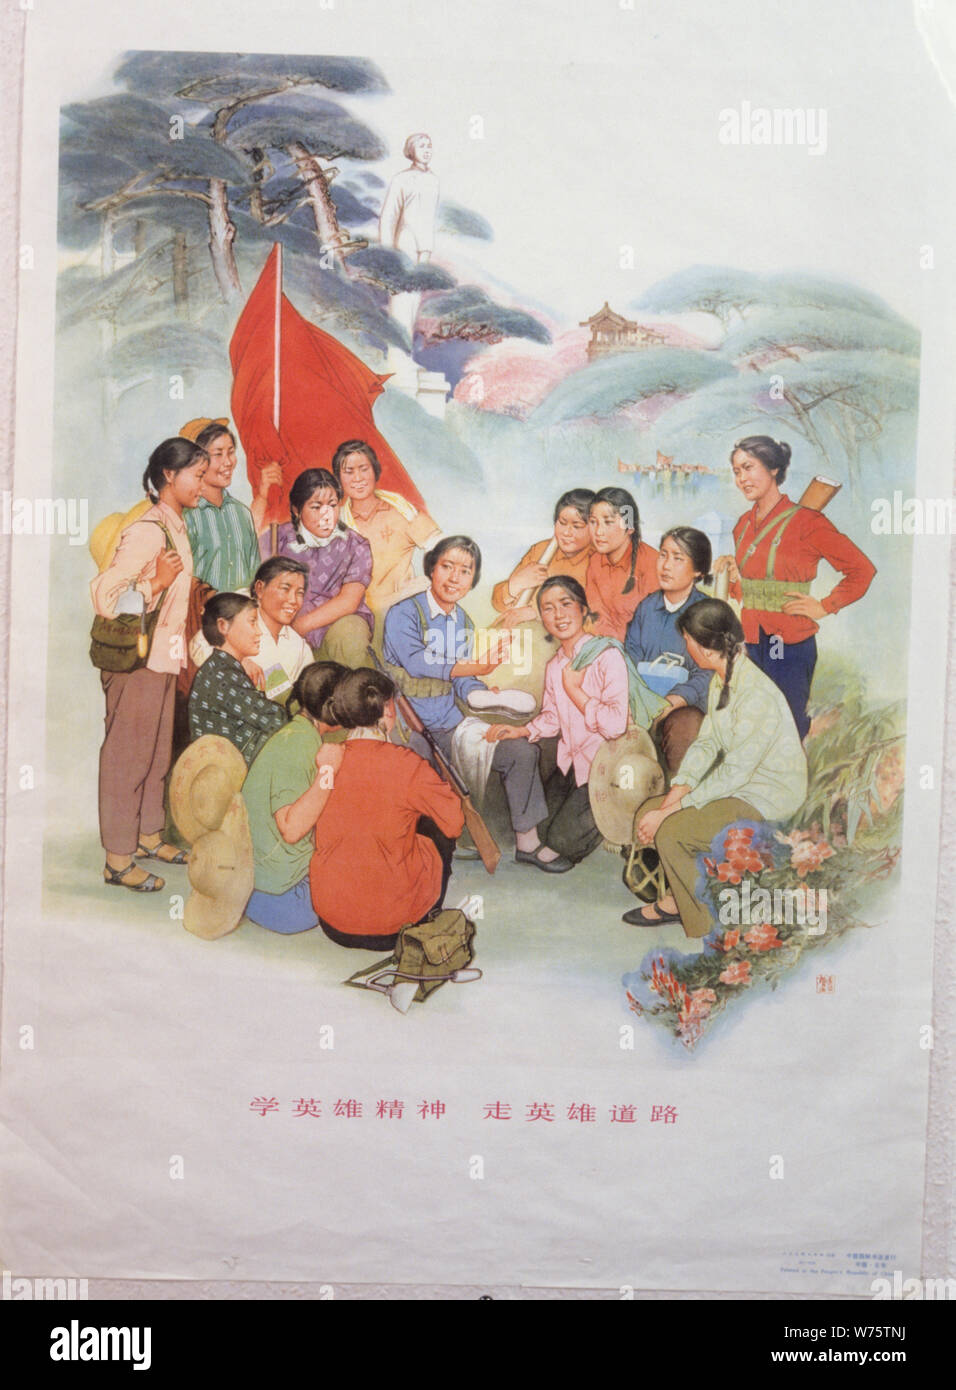 Il manifesto, la rivoluzione culturale cinese Foto Stock